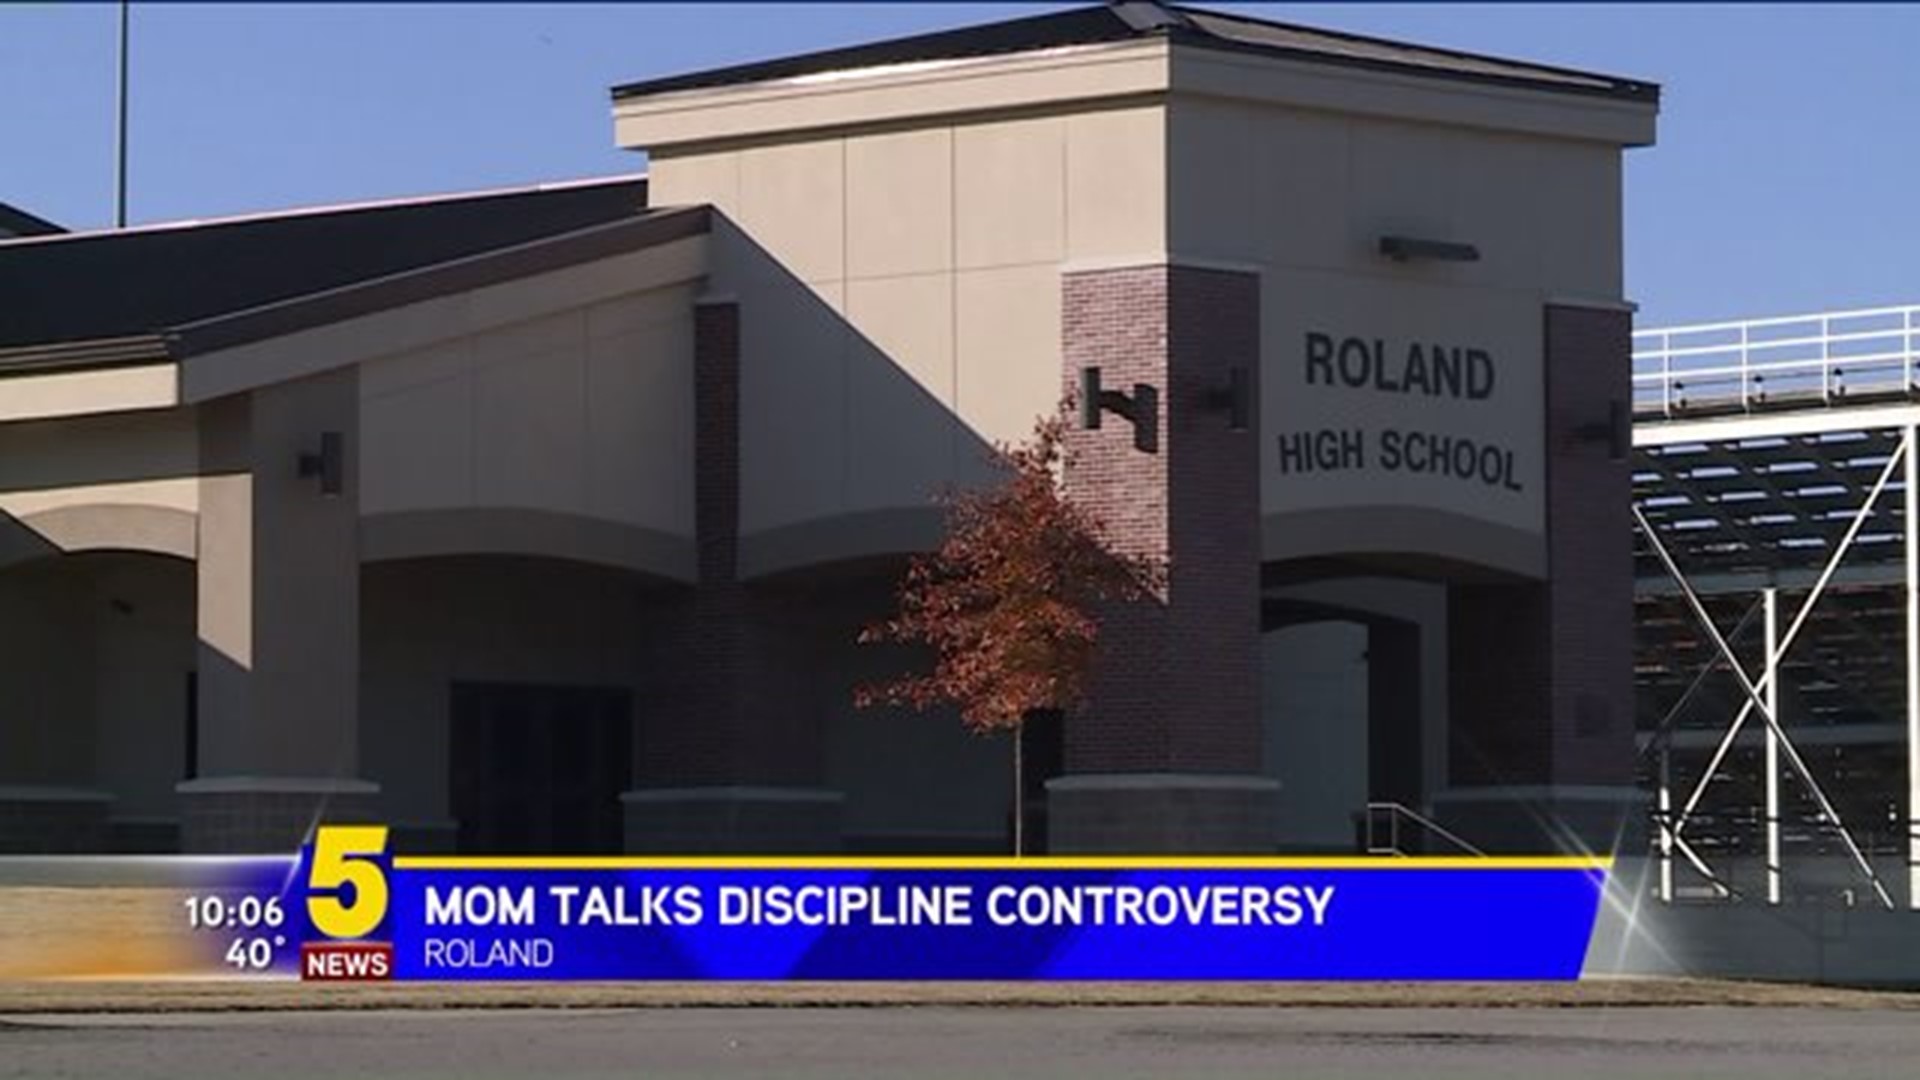 Mom Talks Discipline Controversy